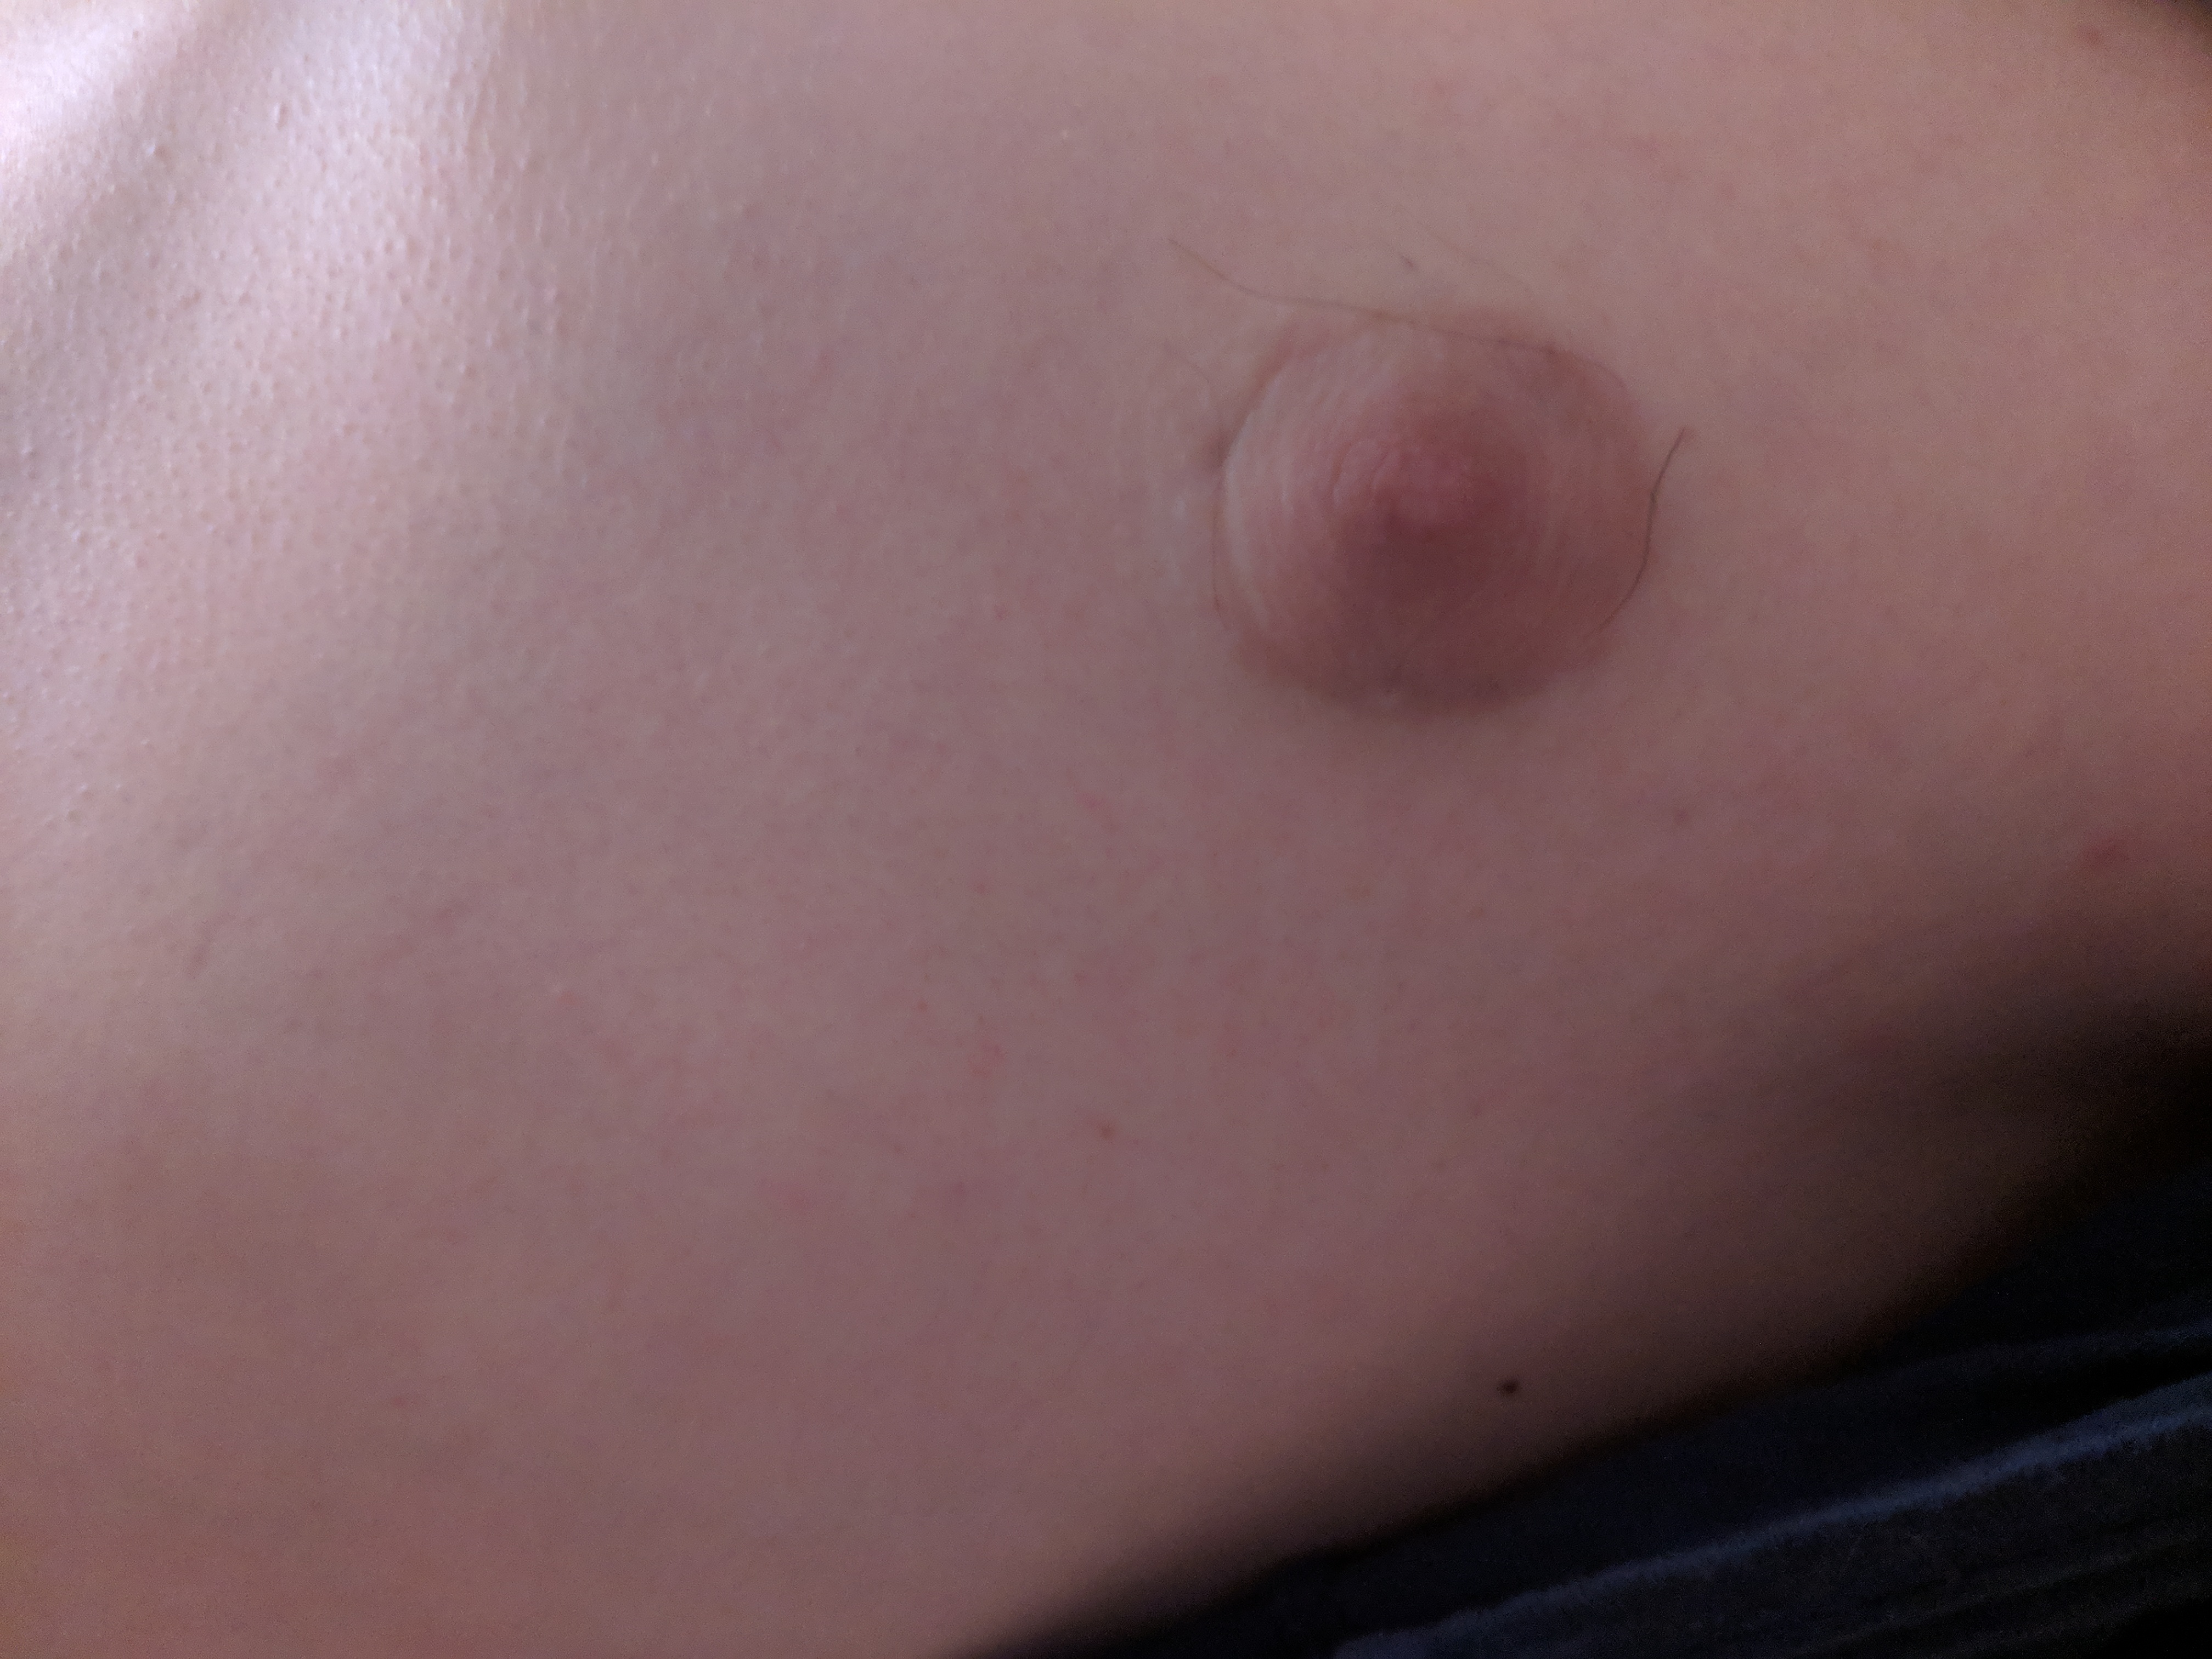 увеличенный сосок груди у мужчин фото 92